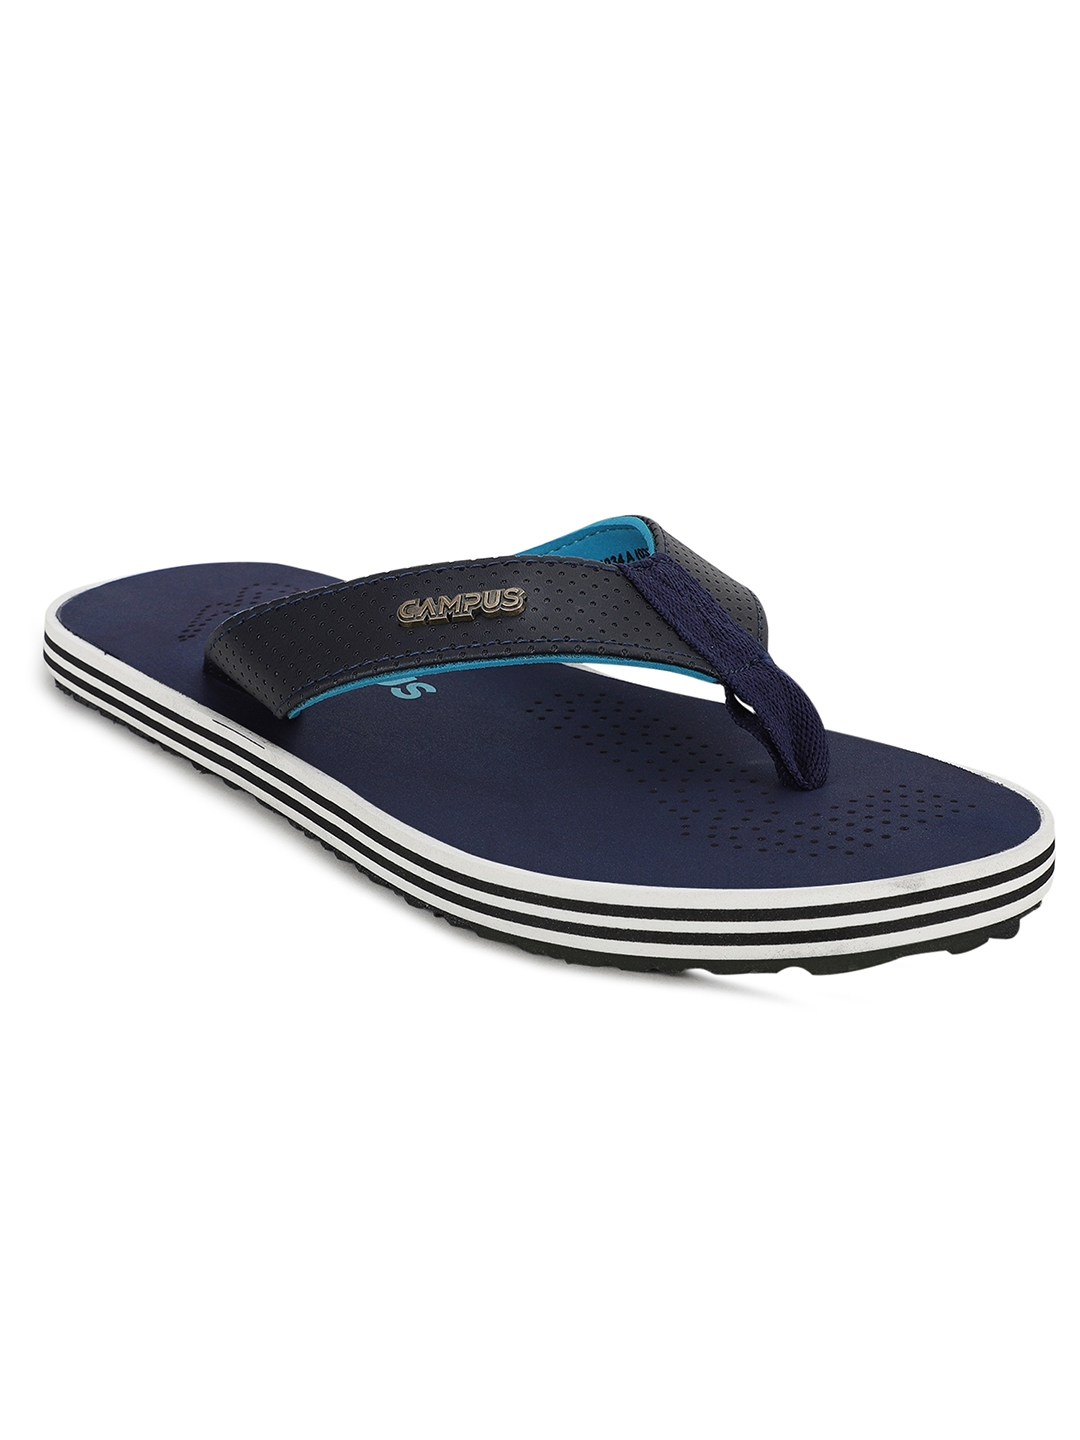 Campus Shoes | GC-1034A